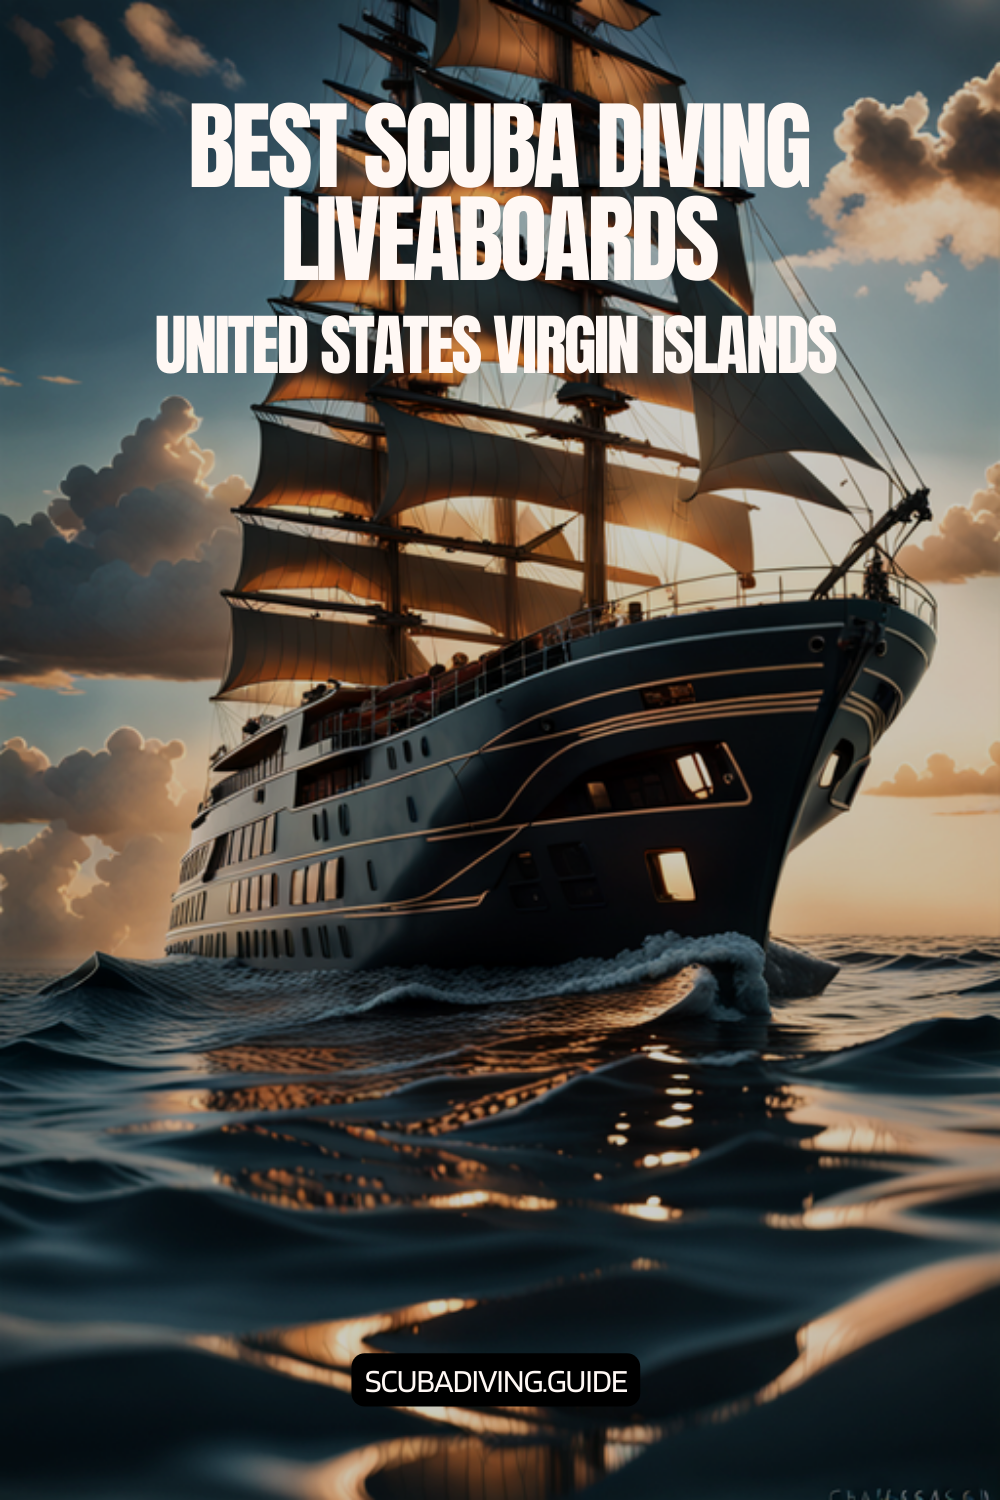 United States Virgin Islands Liveaboards